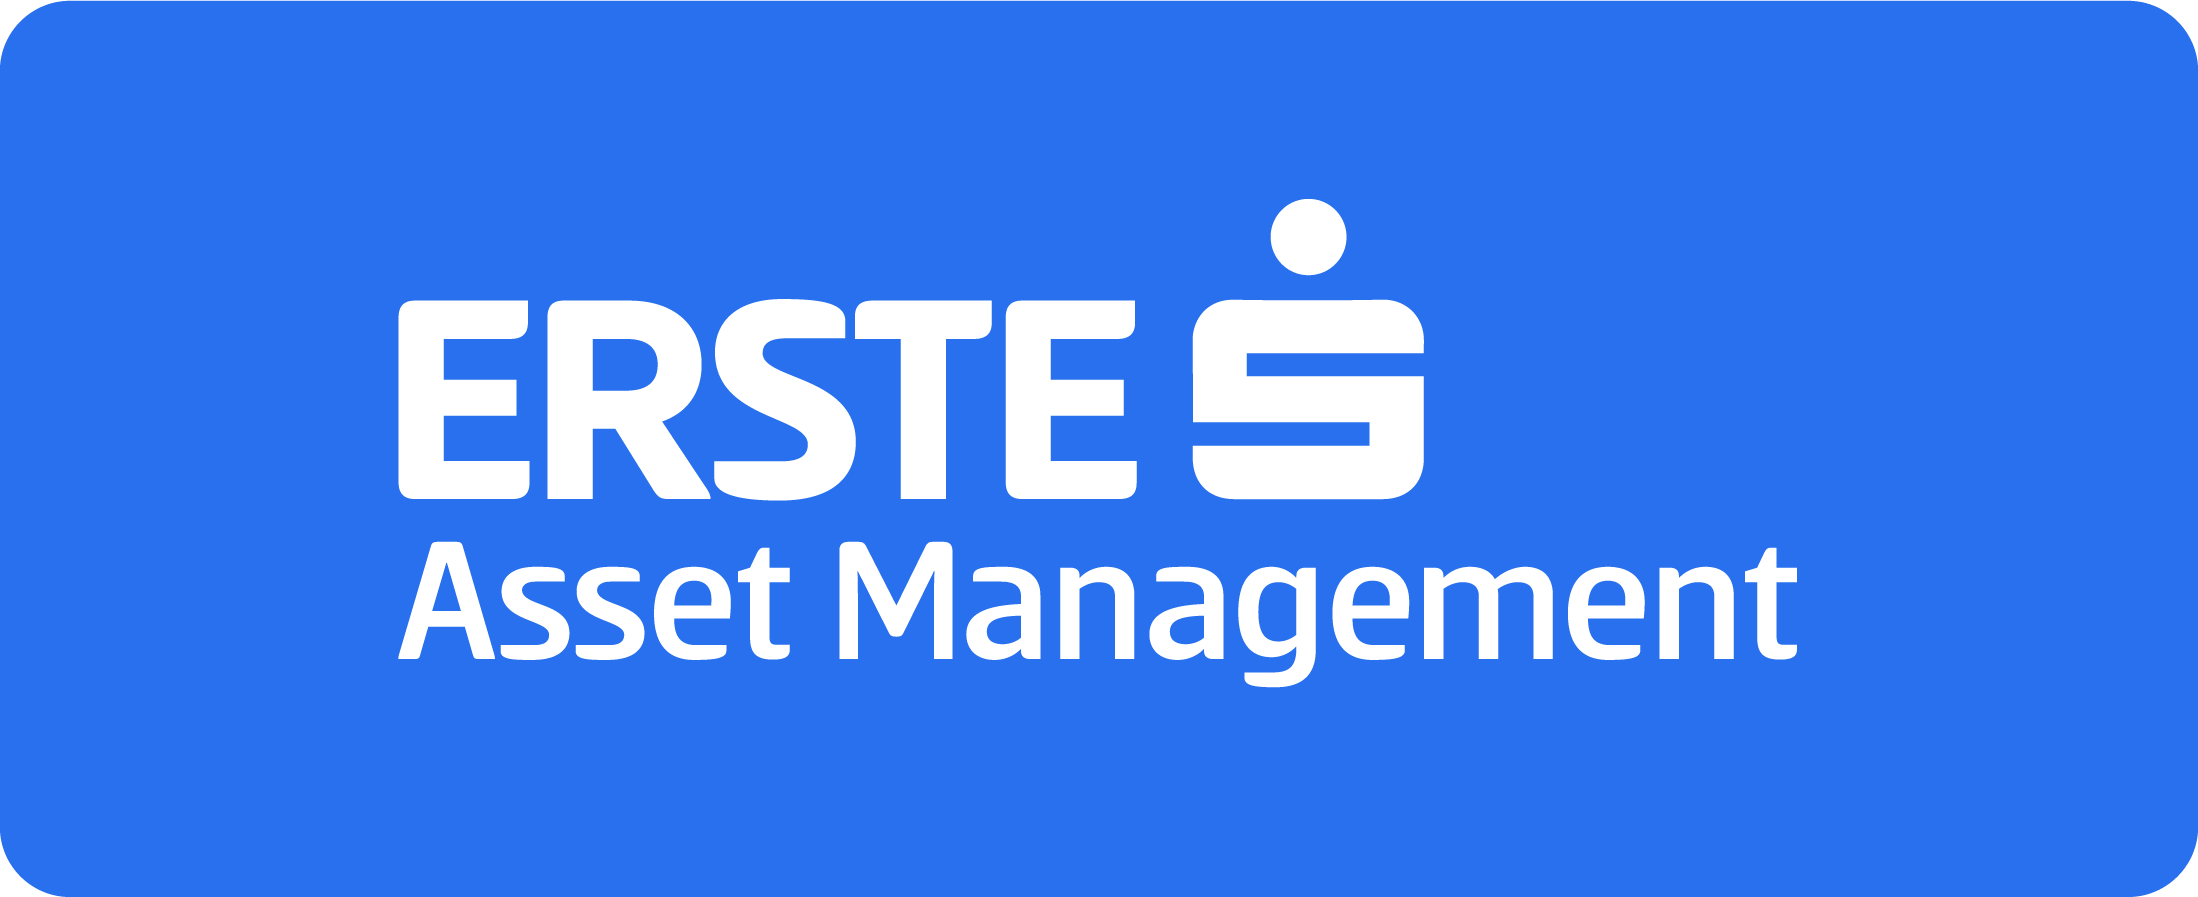 Erste Asset Management GmbH, pobočka Slovenská republika